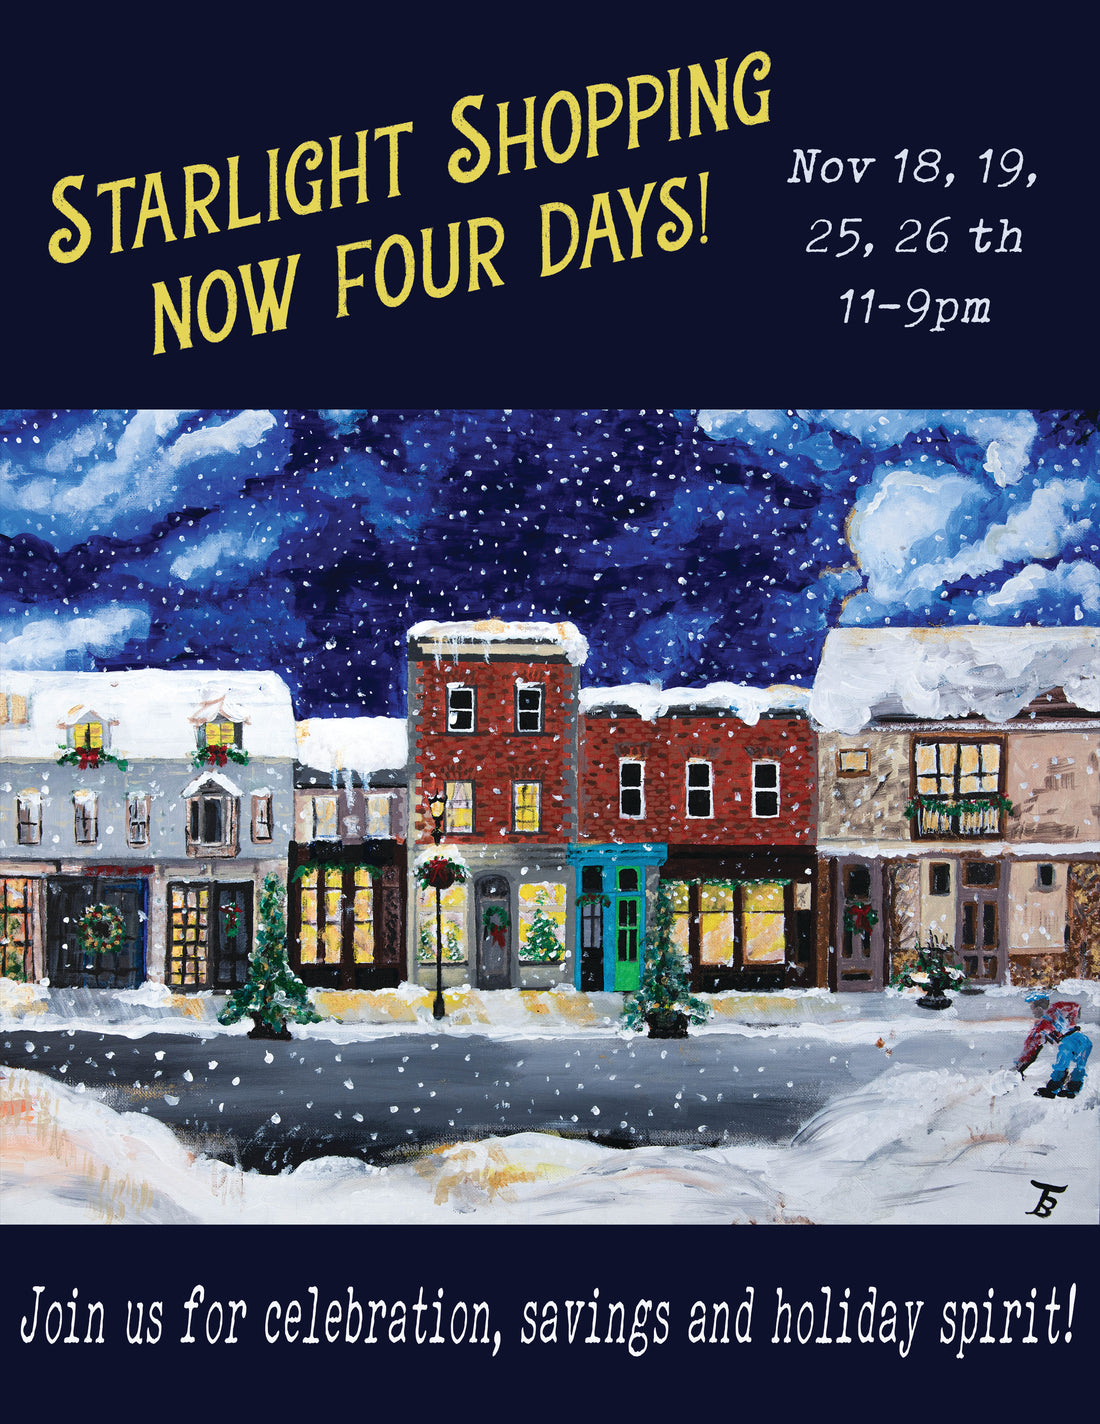 Starlight Shopping returns this November!